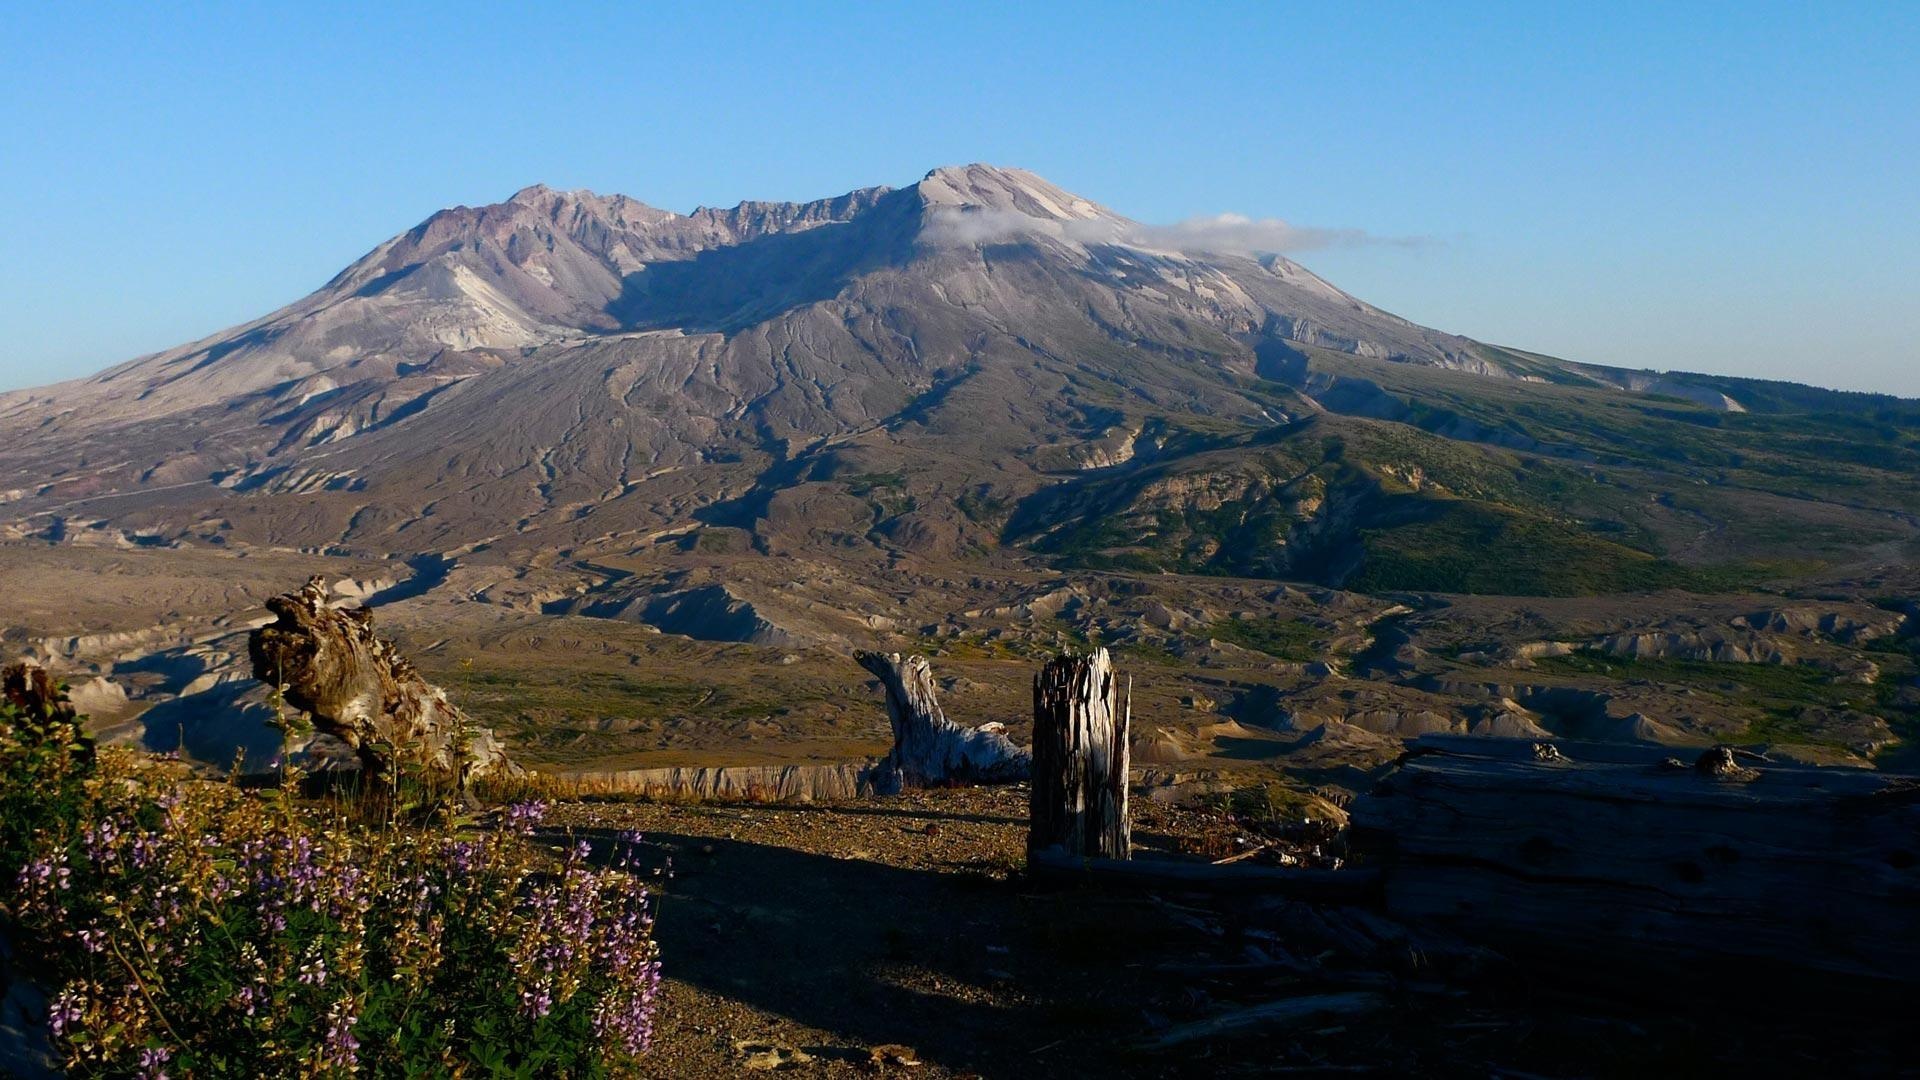 Mount St. Helens, Winter wonderland, Snow-covered peaks, Serene beauty, 1920x1080 Full HD Desktop